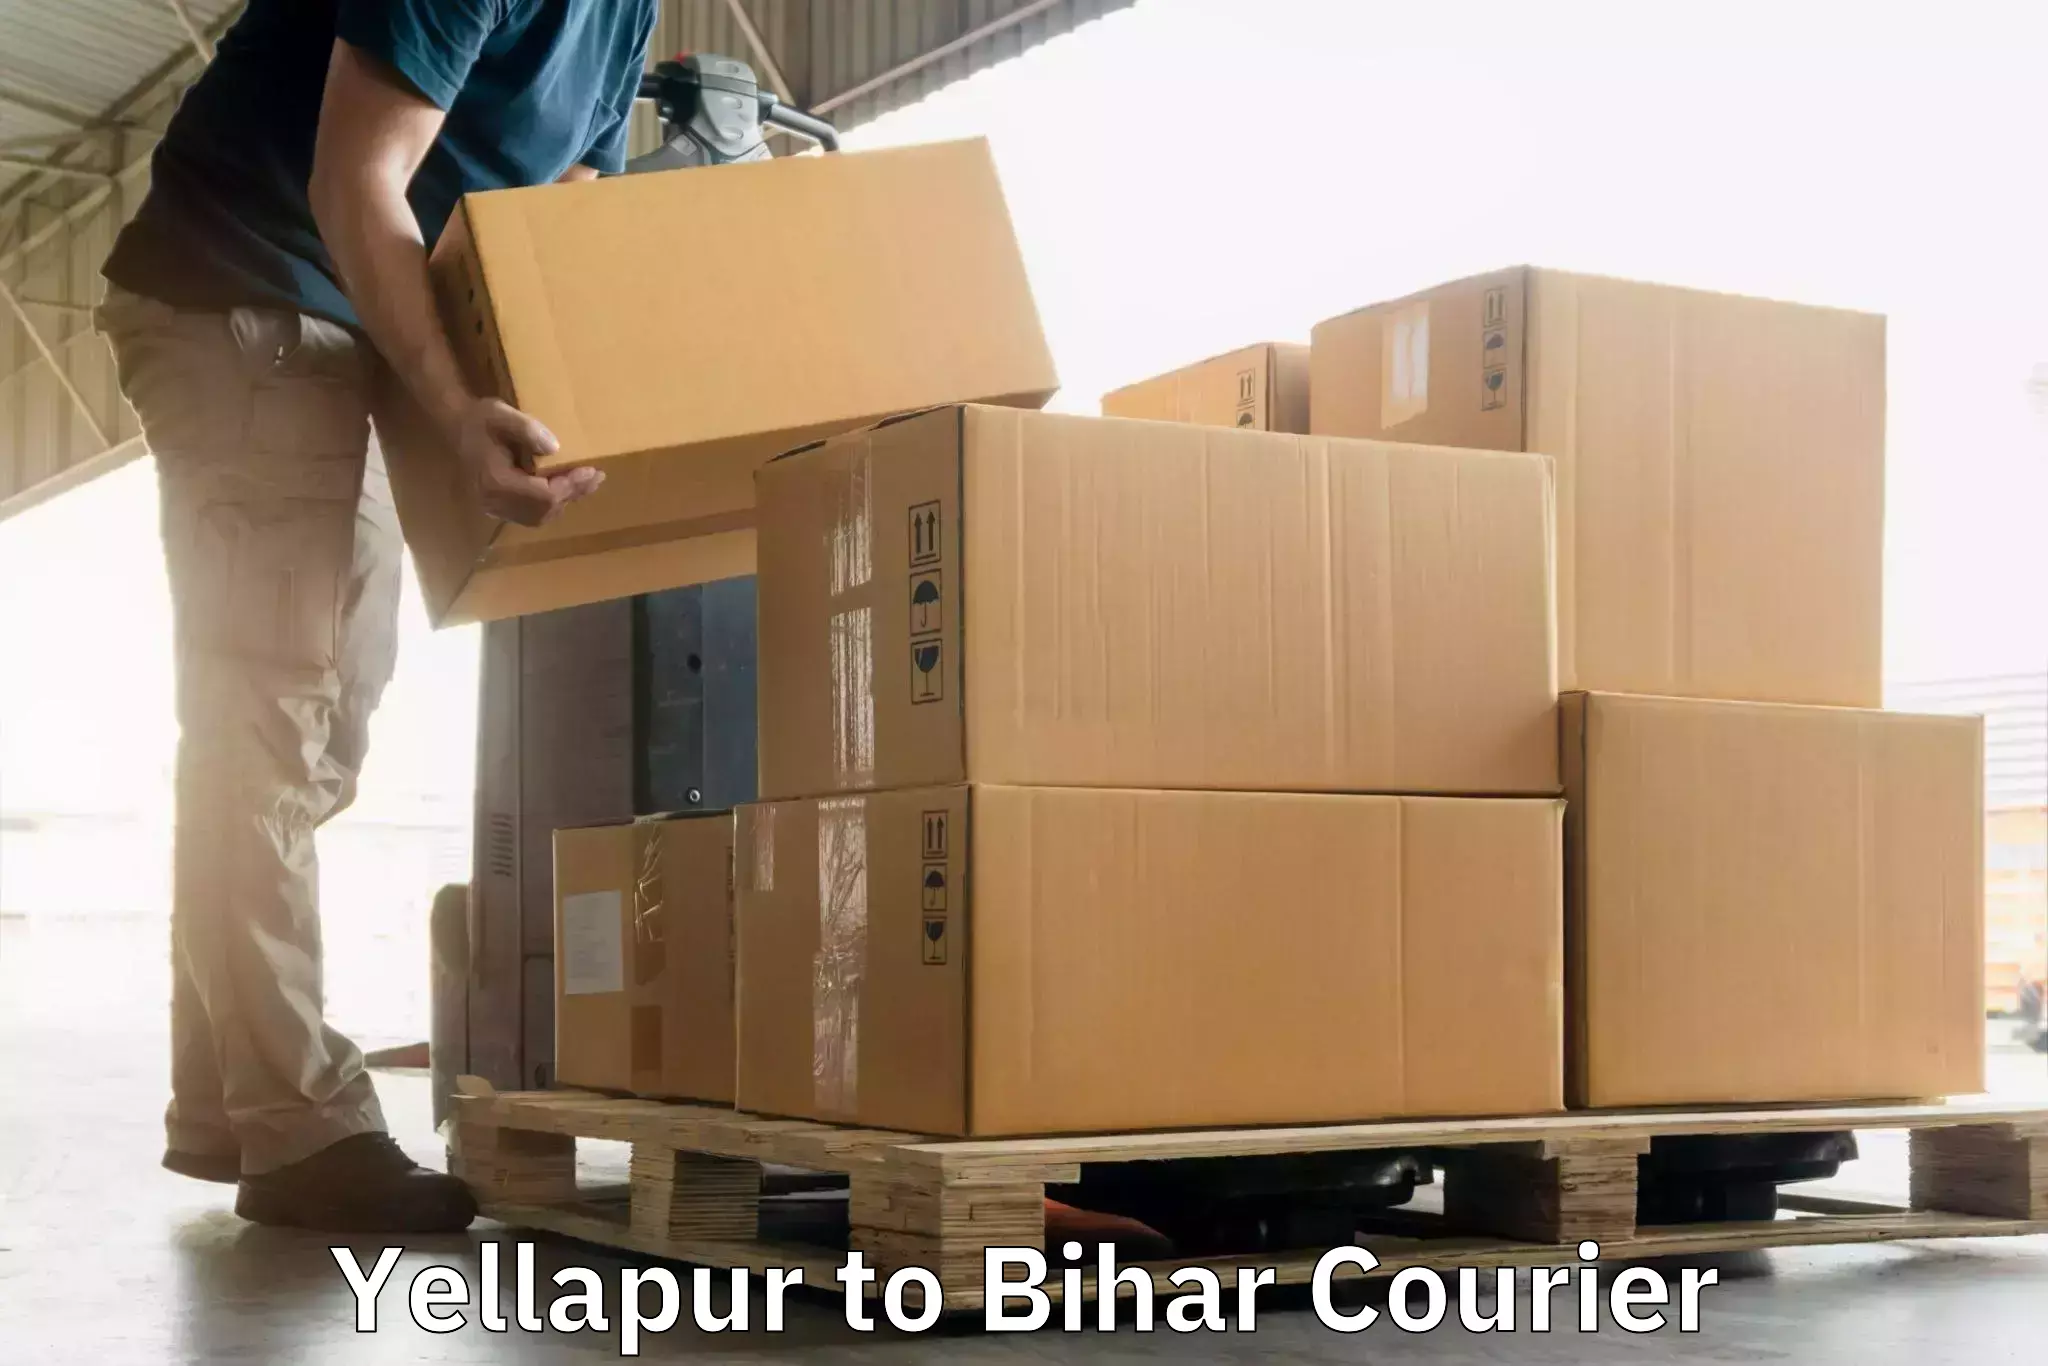 High-capacity parcel service Yellapur to Lalganj Vaishali